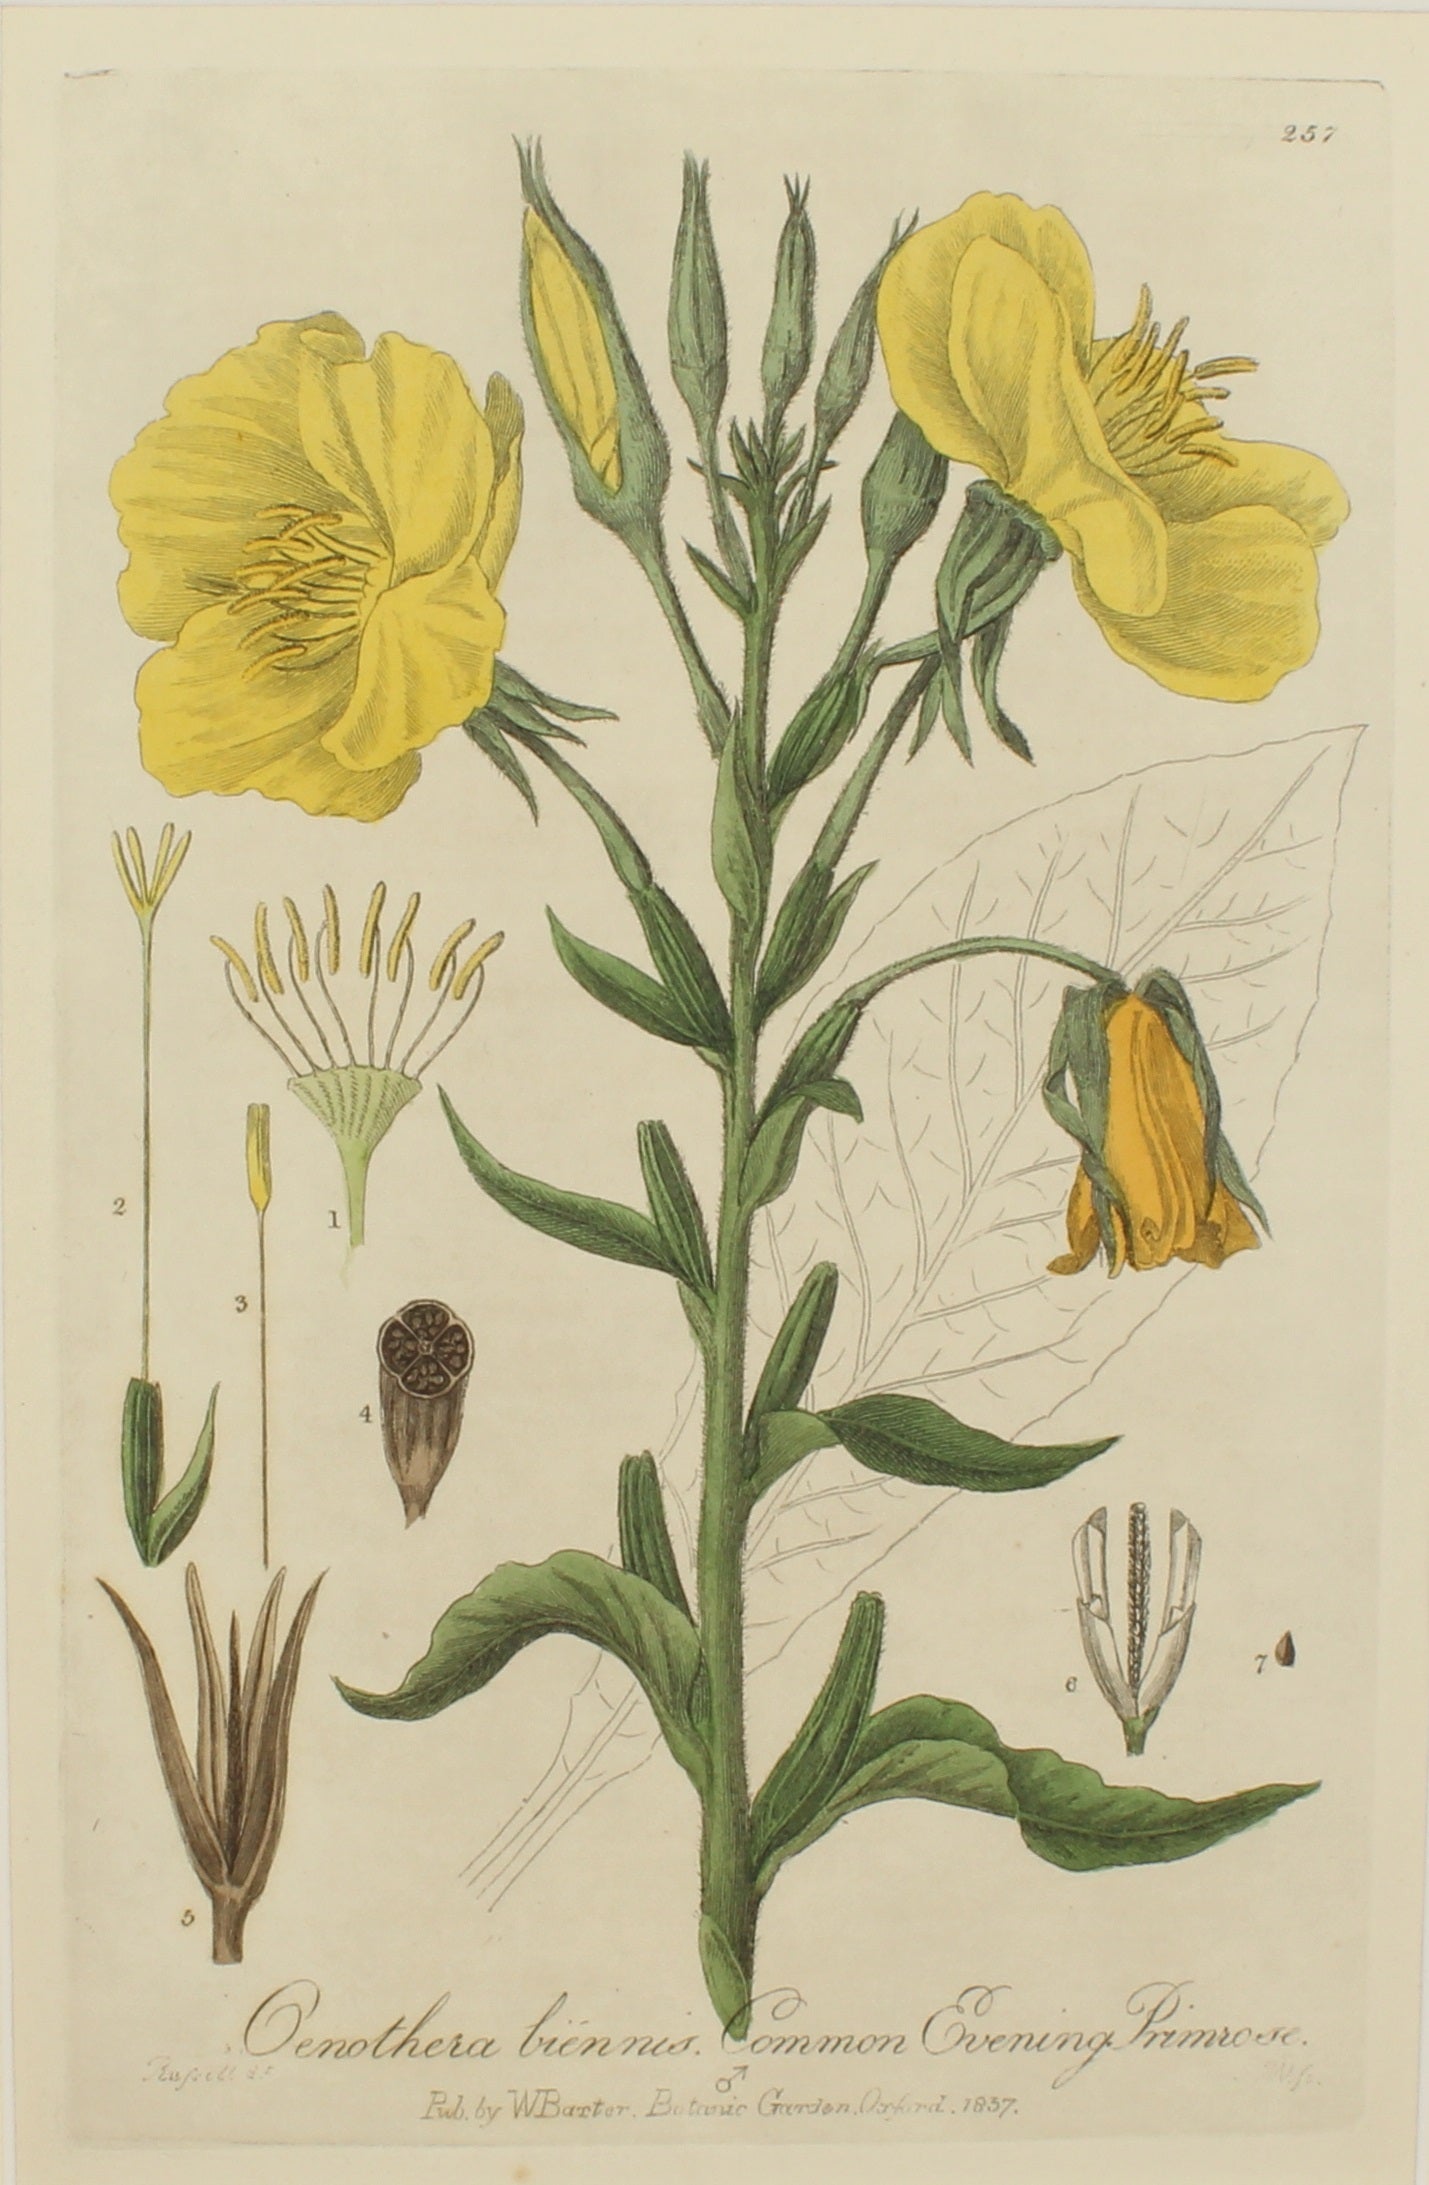 Botanical, Baxter William, Common Evening Primrose,1840-1843